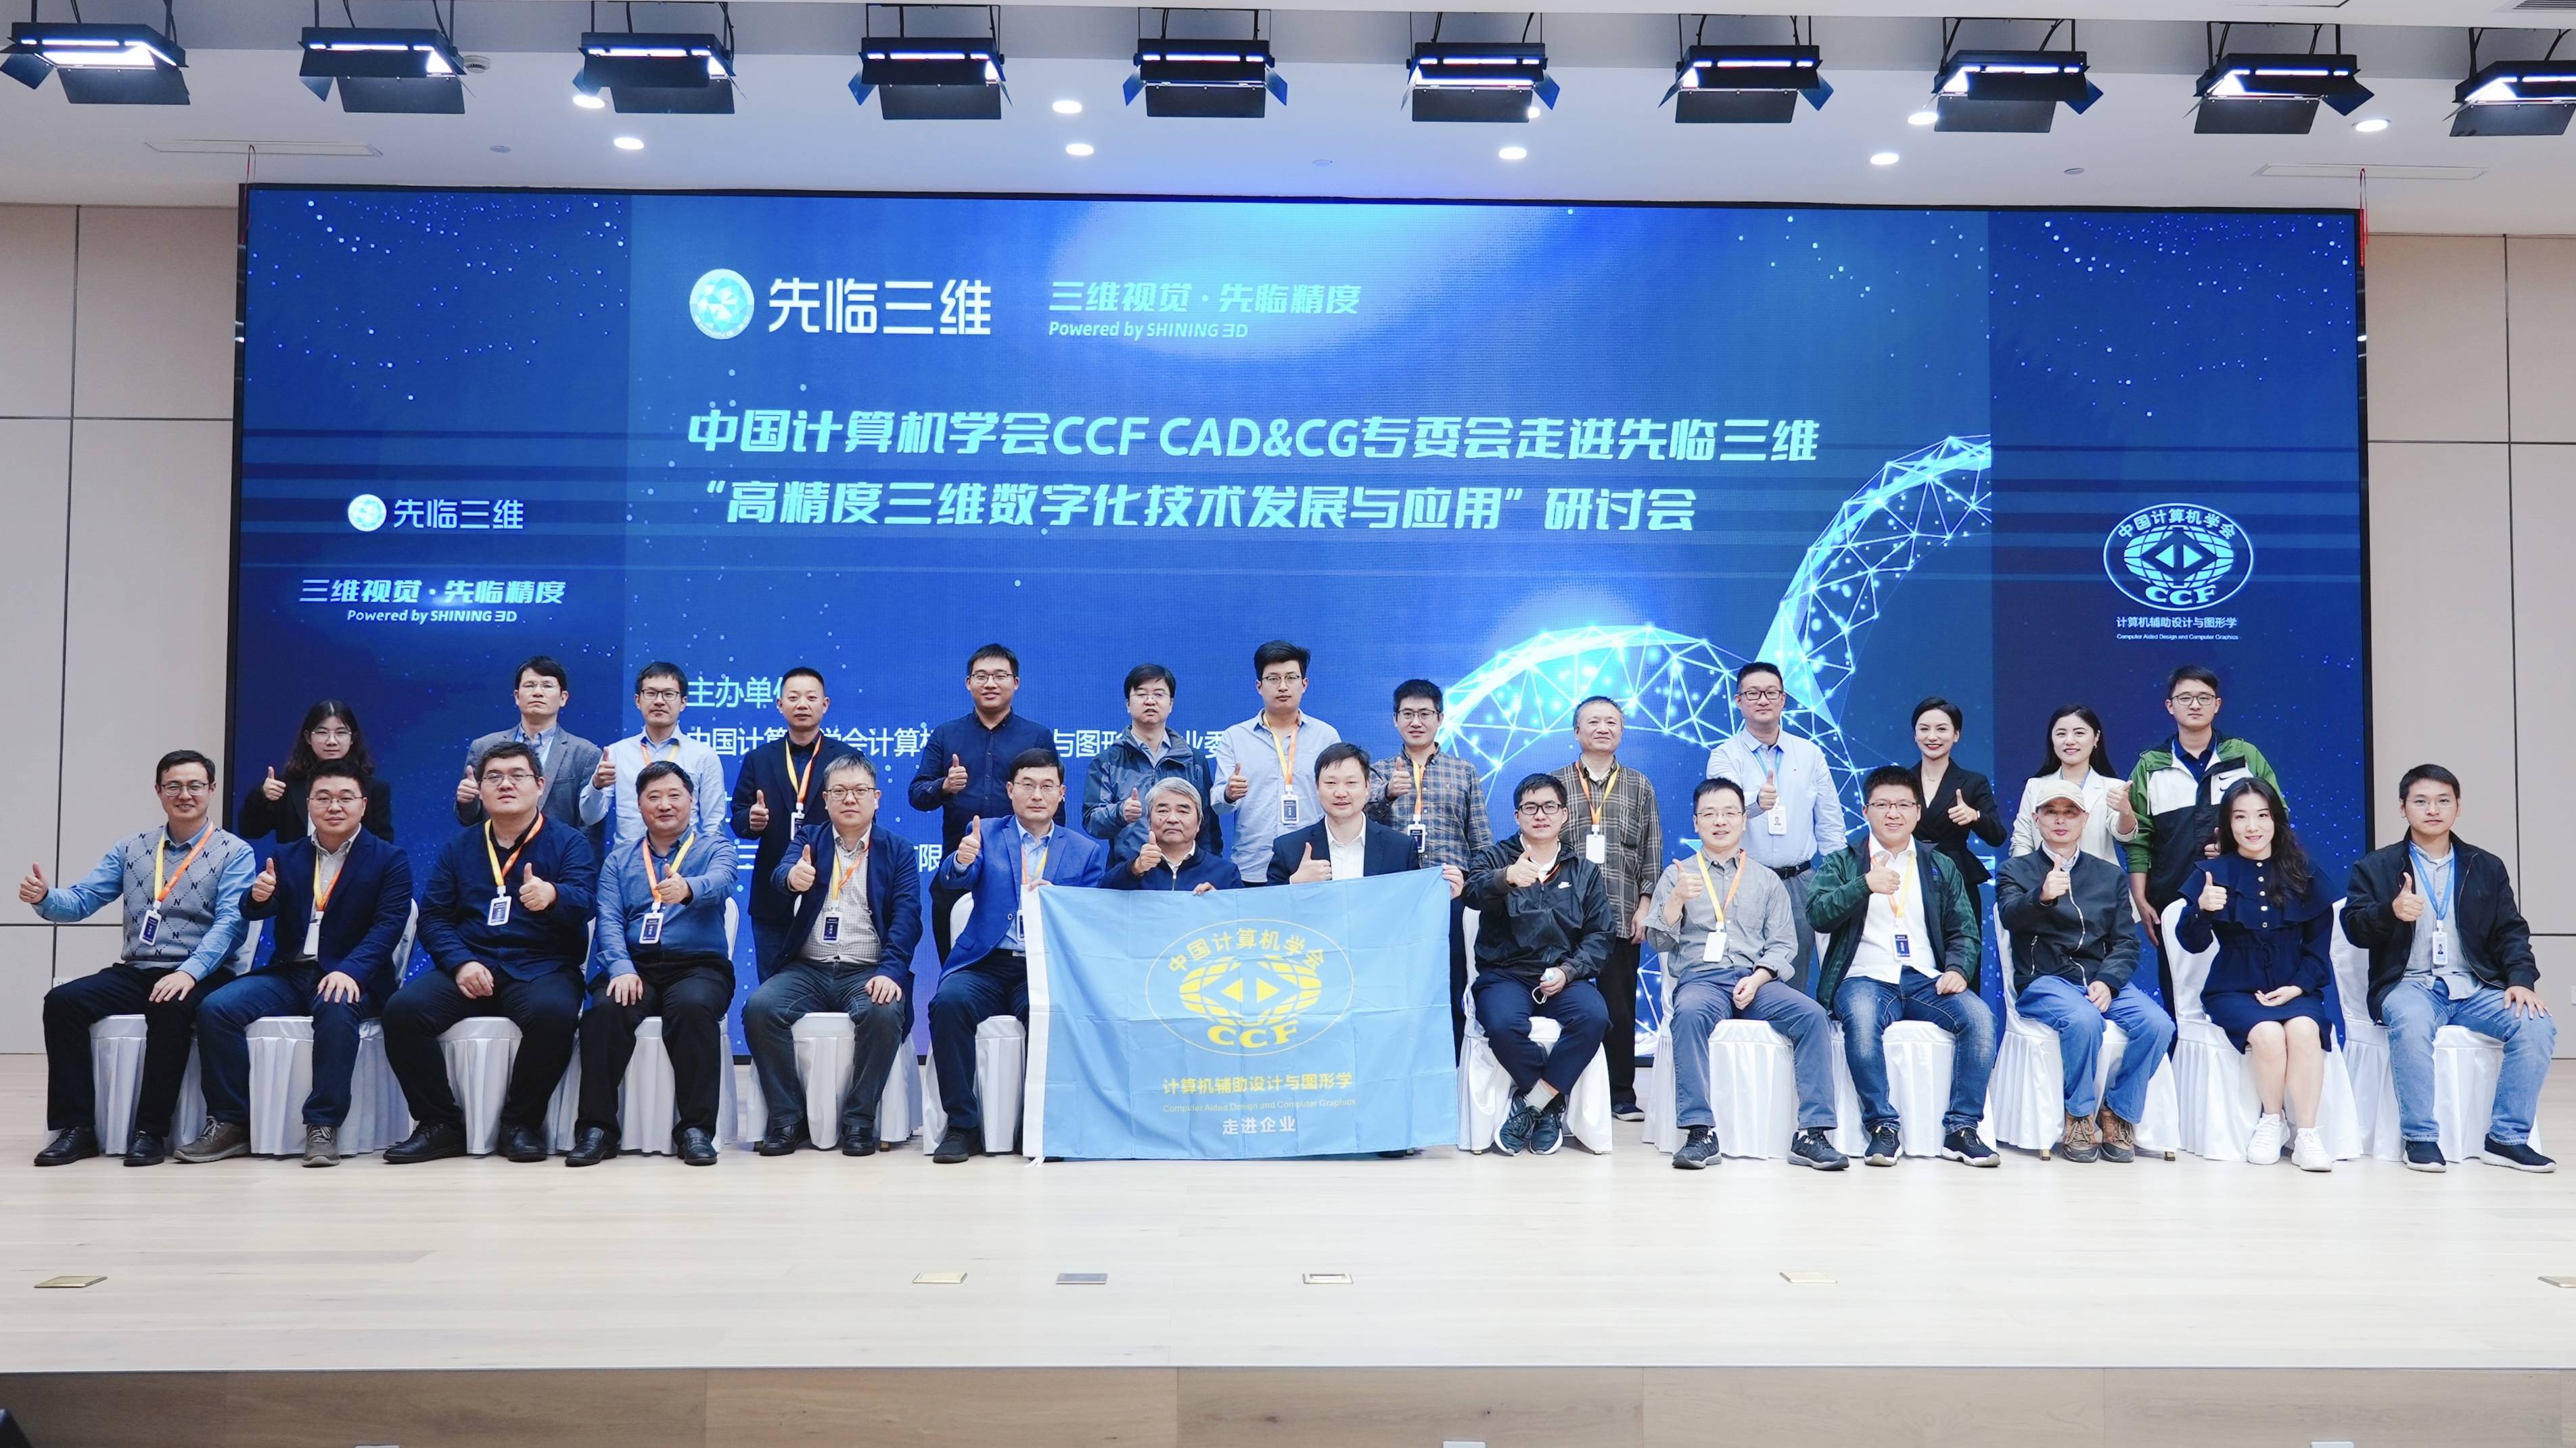 中国计算机学会CCF CAD&CG专委会走进先临三维暨先临三维开放日活动取得圆满成功